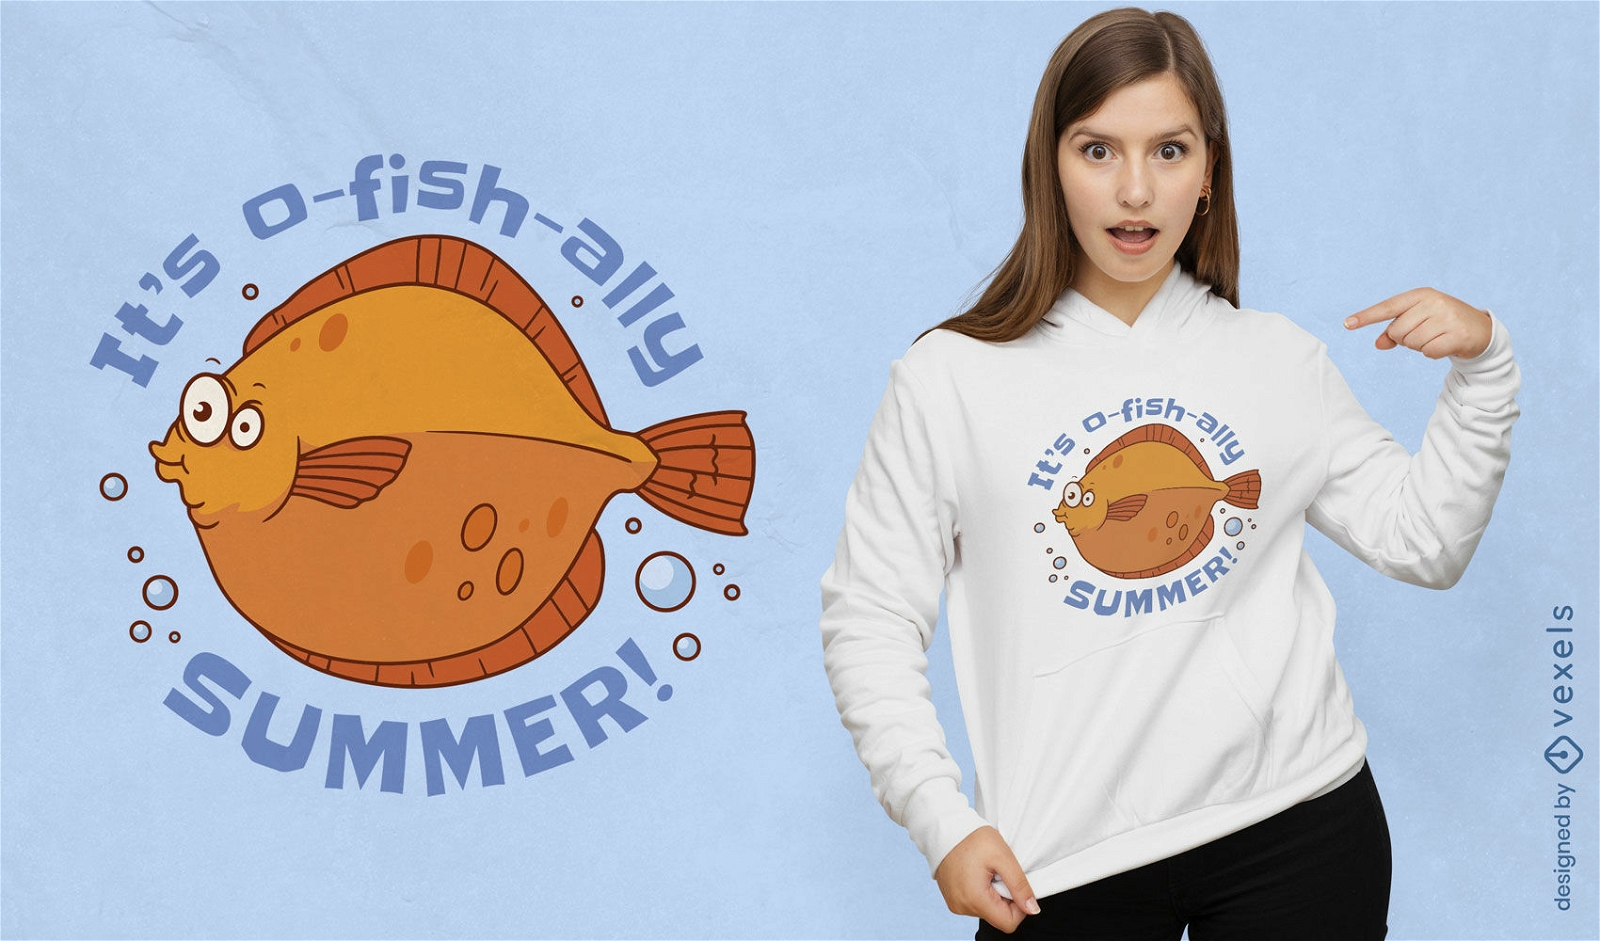 Diseño de camiseta de juego de palabras de pescado de verano.